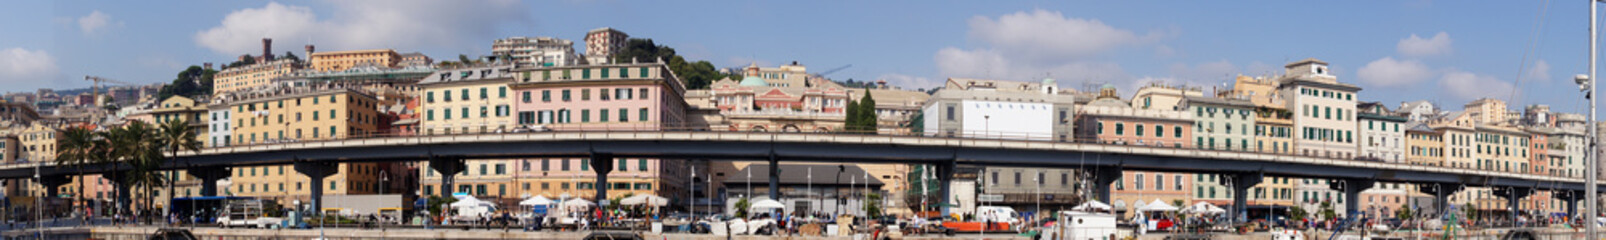 Fototapeta na wymiar Most drogowy w Genui